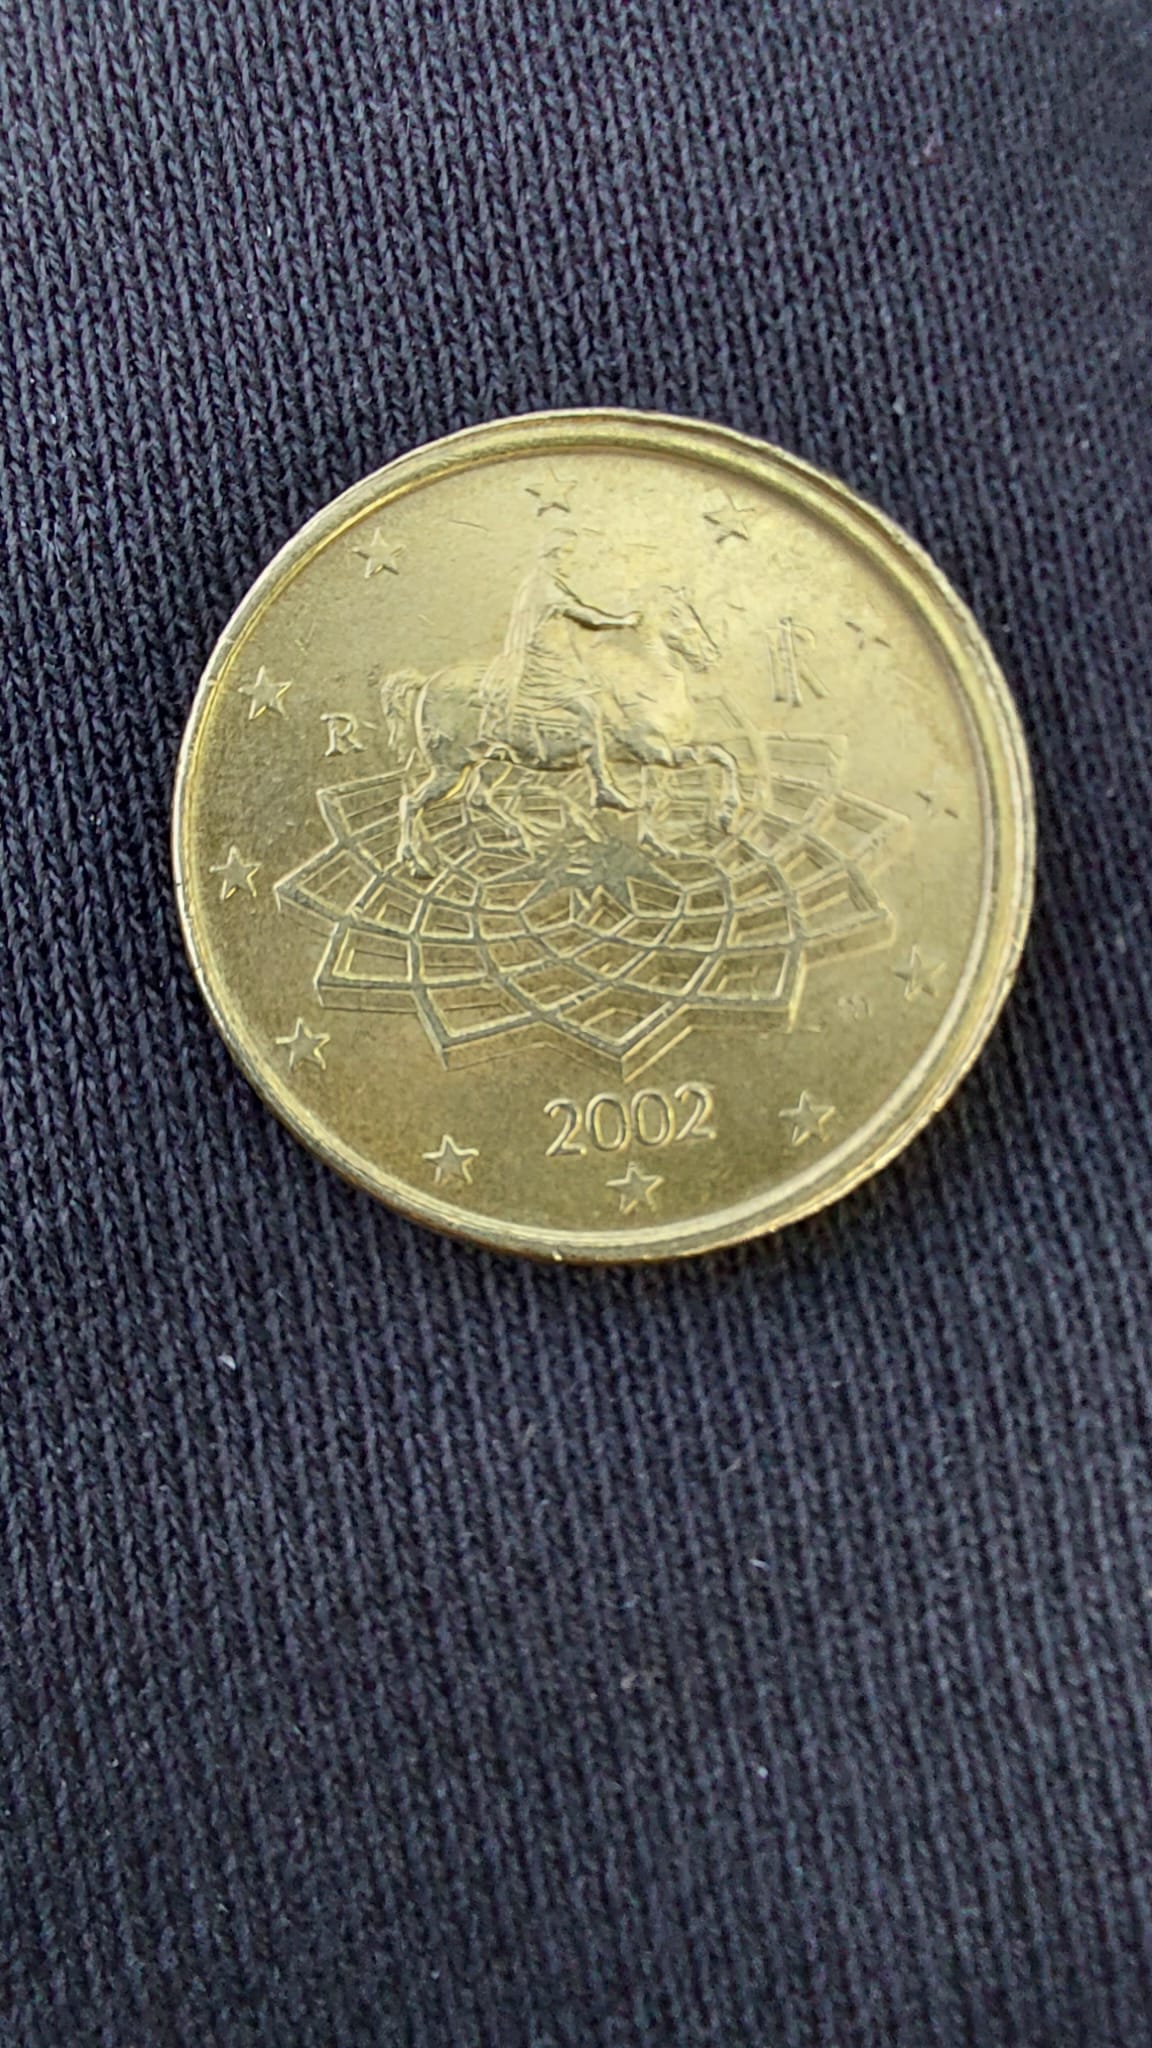 50 Cent Italien 2002 Fehlprägung